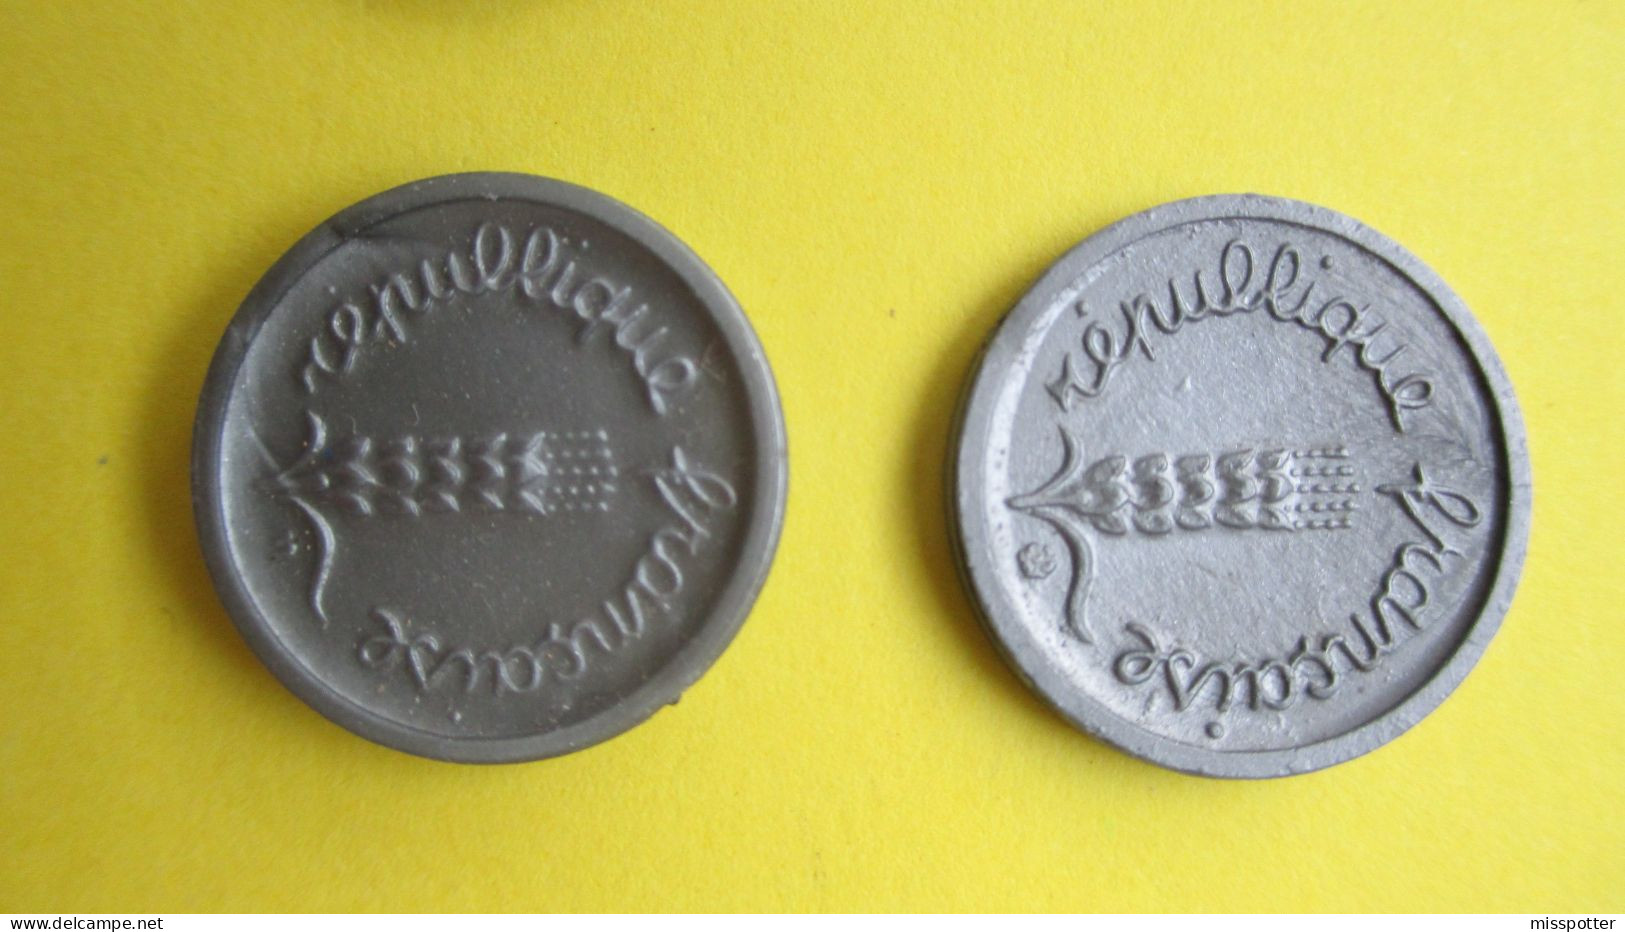 Lot de 11 pièces de monnaie factices plastique, Francs et Centimes, différentes